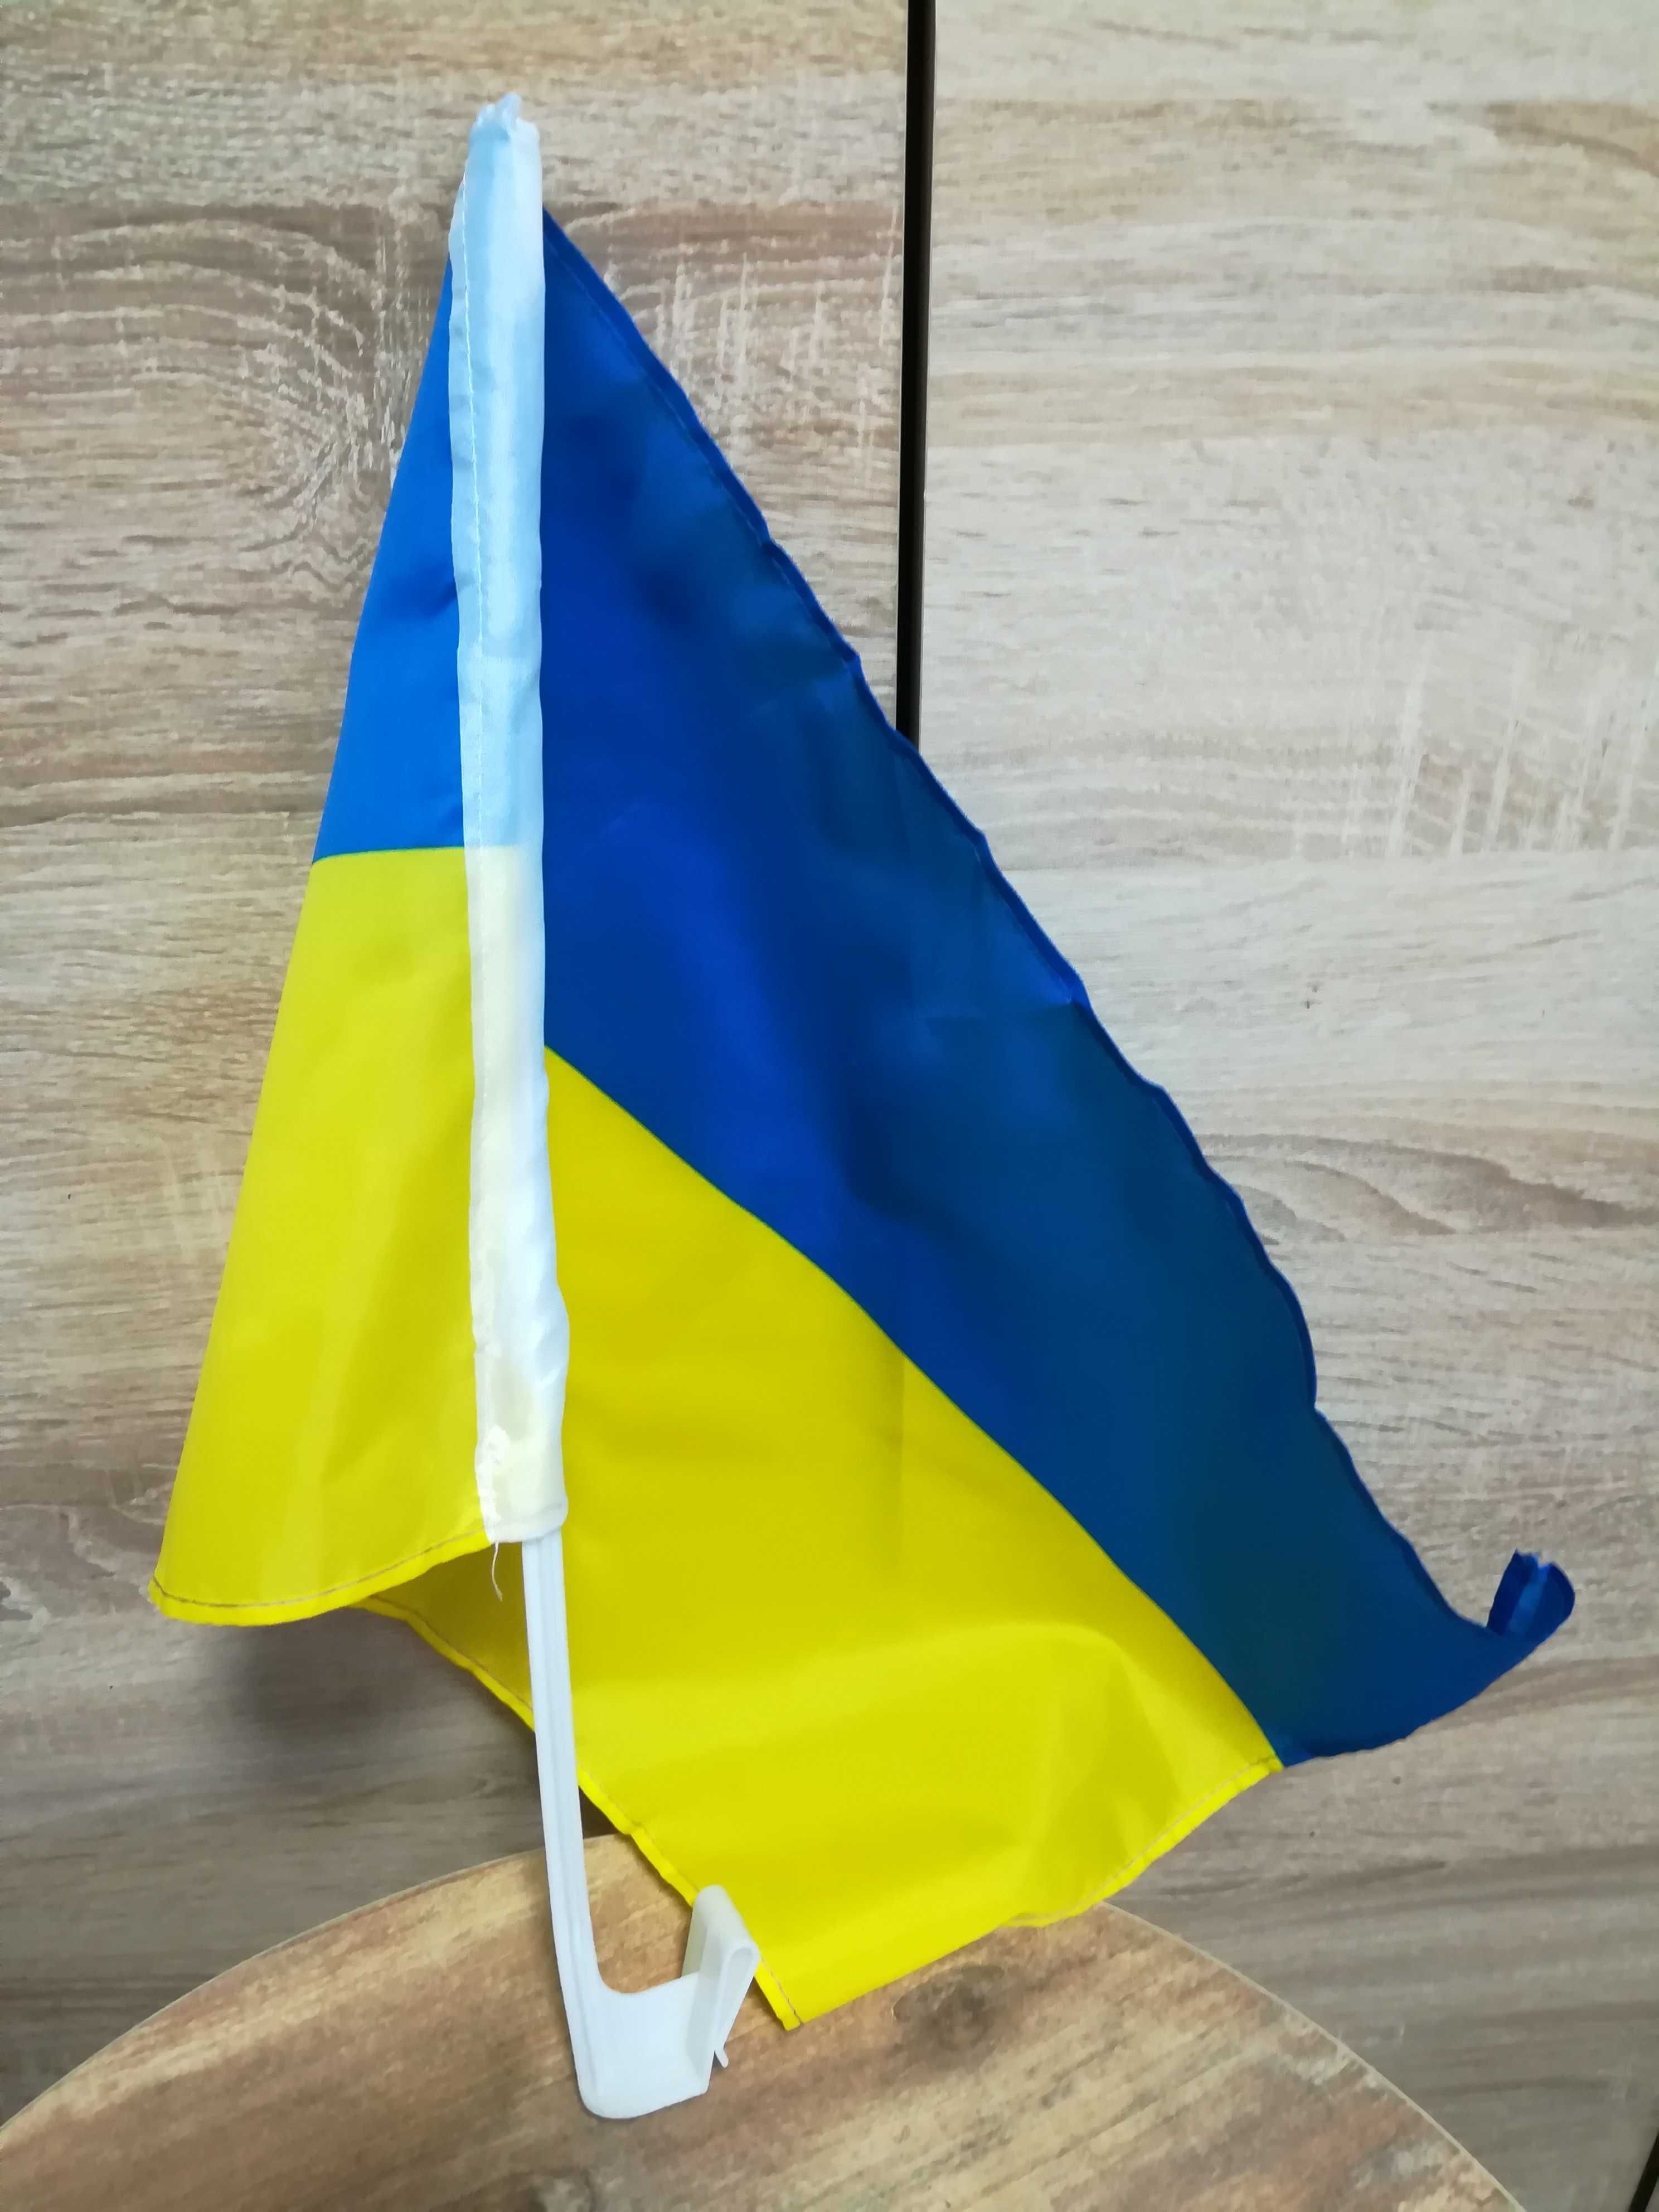 Флаг Украины на стекло автомобиля.